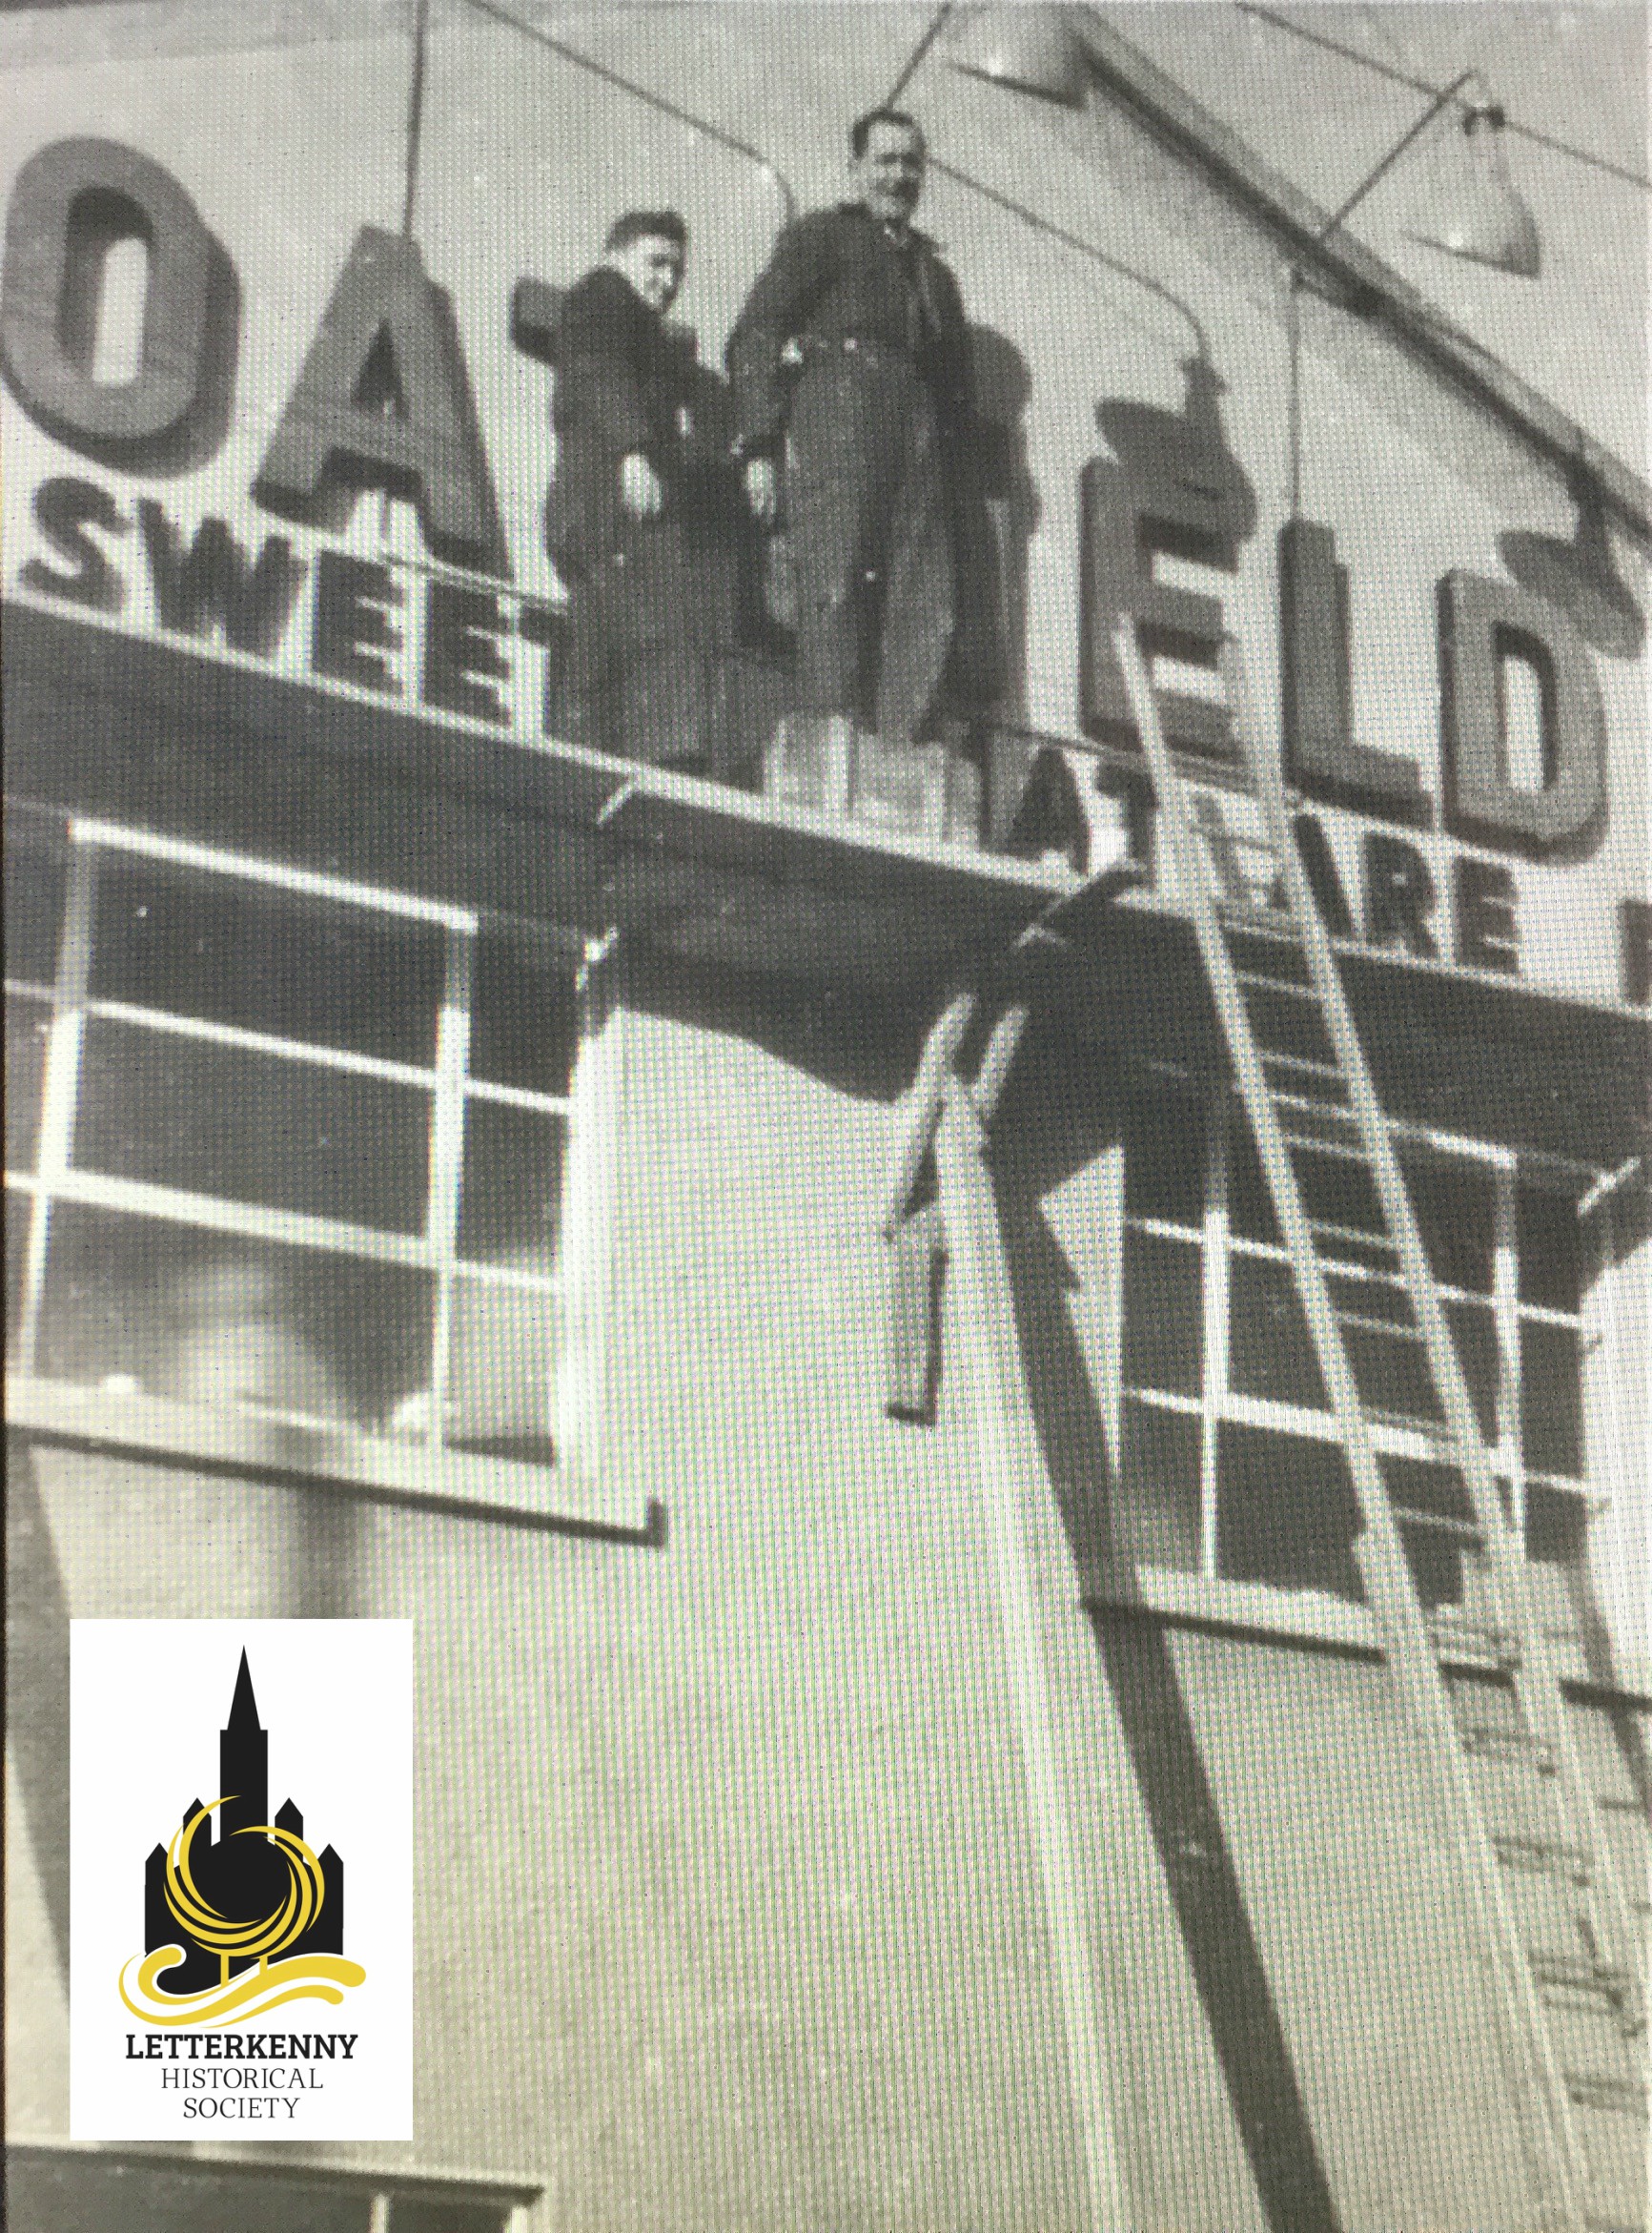 Oatfield Sweet Factory